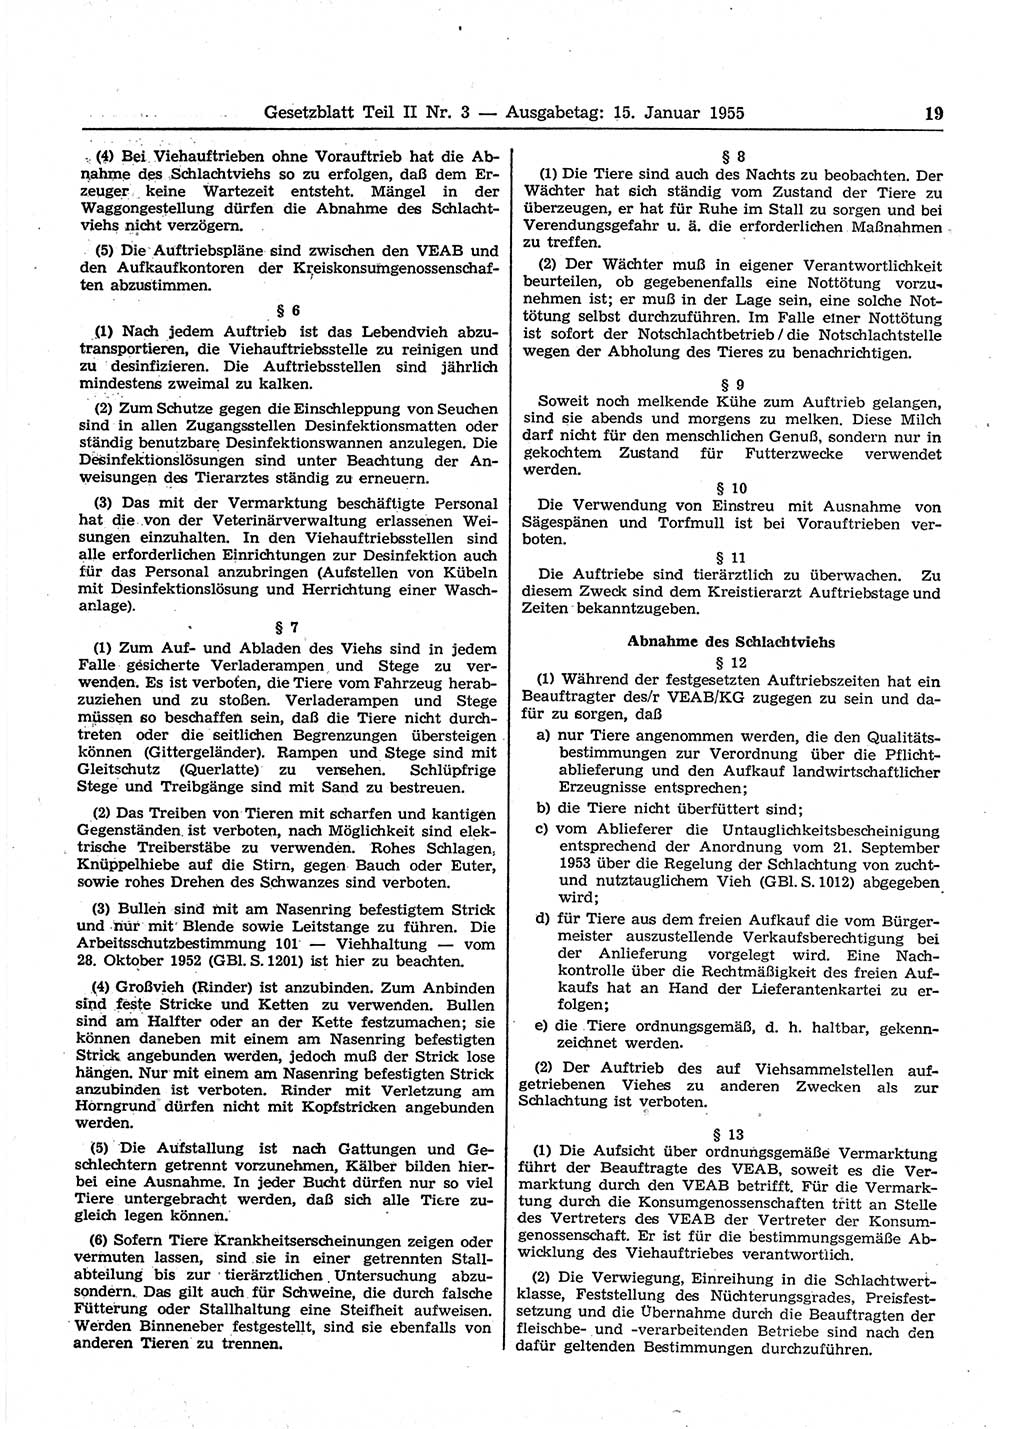 Gesetzblatt (GBl.) der Deutschen Demokratischen Republik (DDR) Teil ⅠⅠ 1955, Seite 19 (GBl. DDR ⅠⅠ 1955, S. 19)